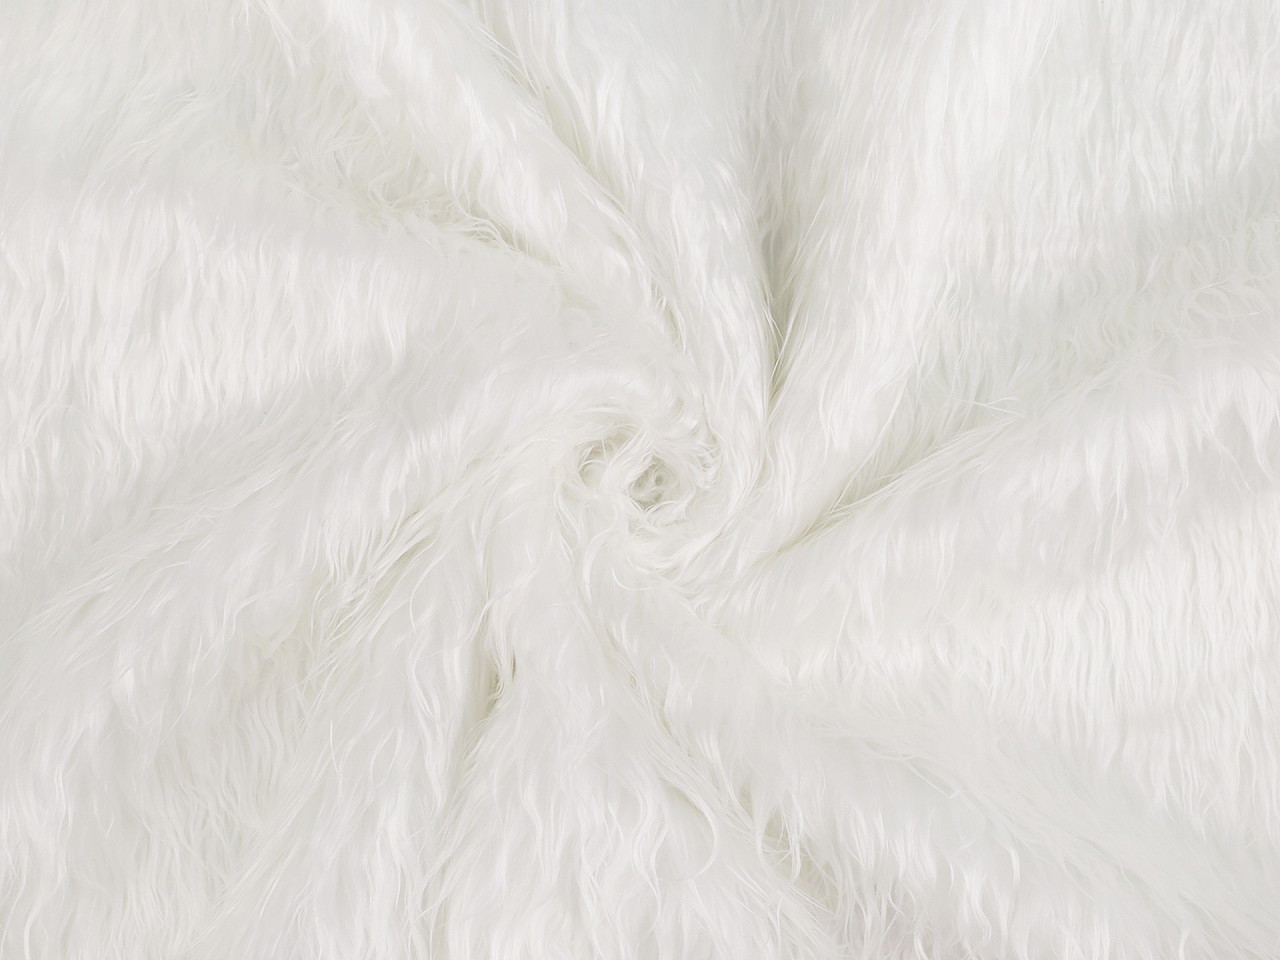 Kožešina, barva 1 (350 g/m²) bílá